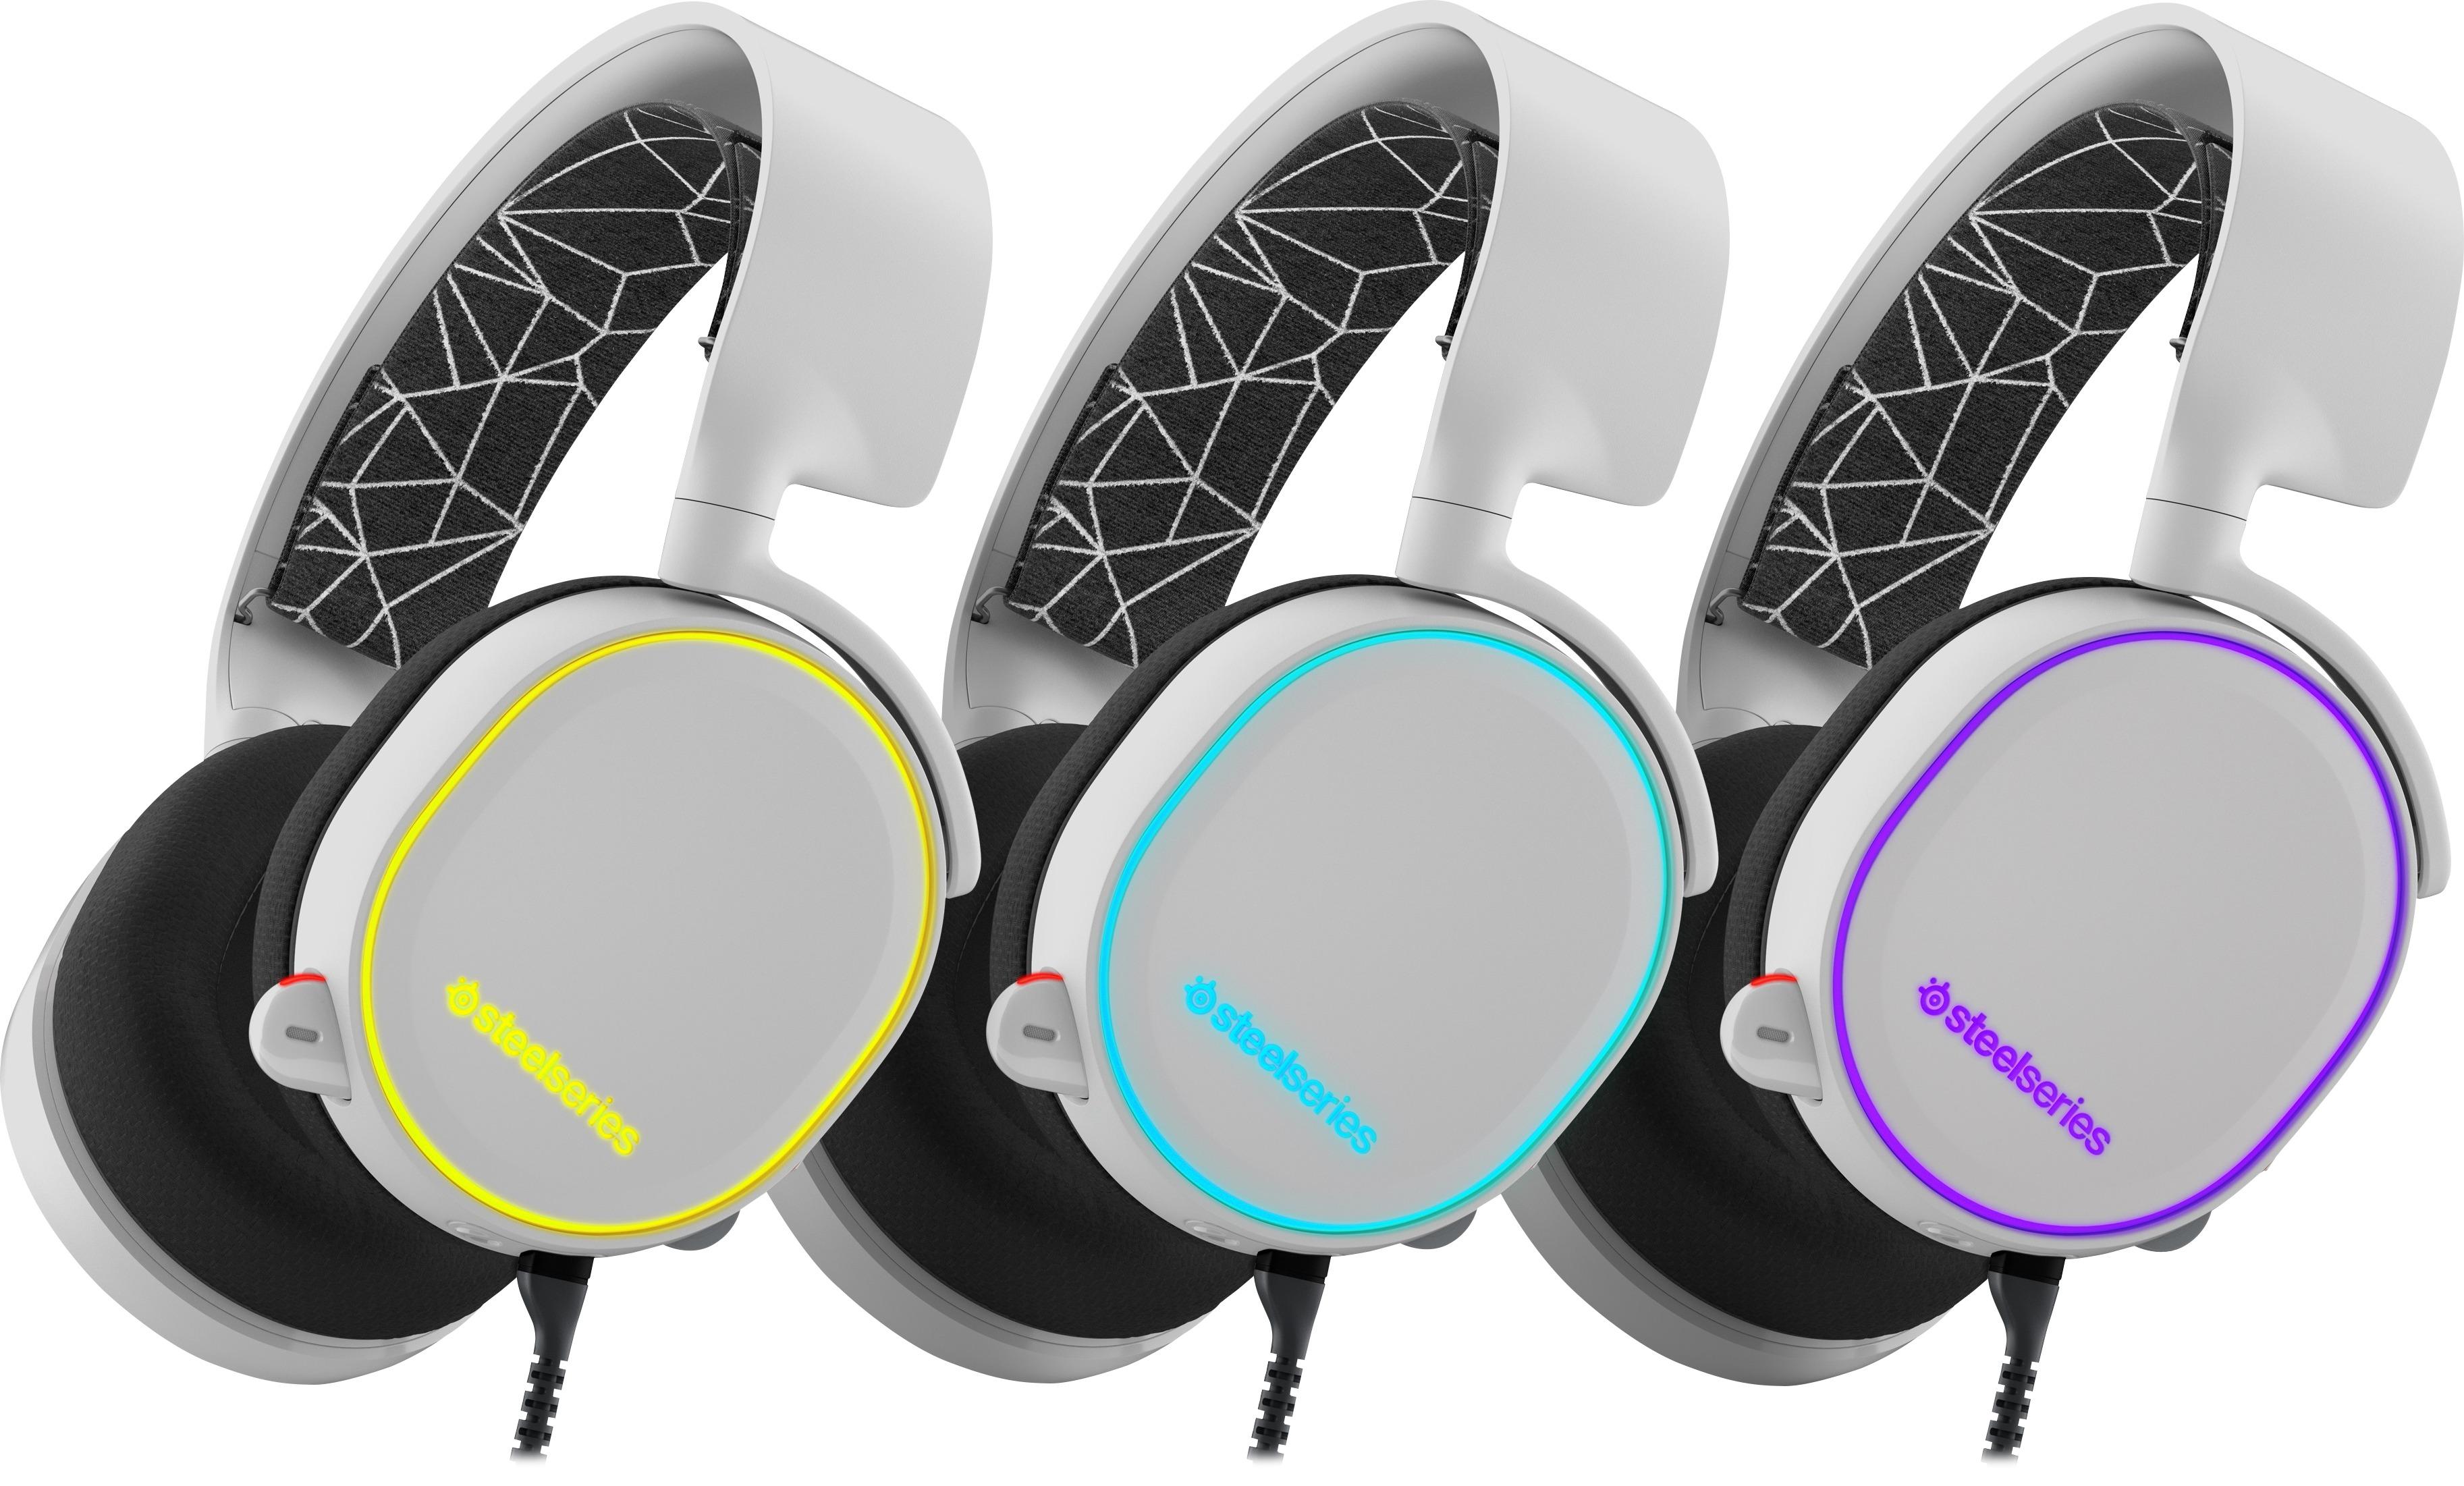 steelseries headphones for xbox